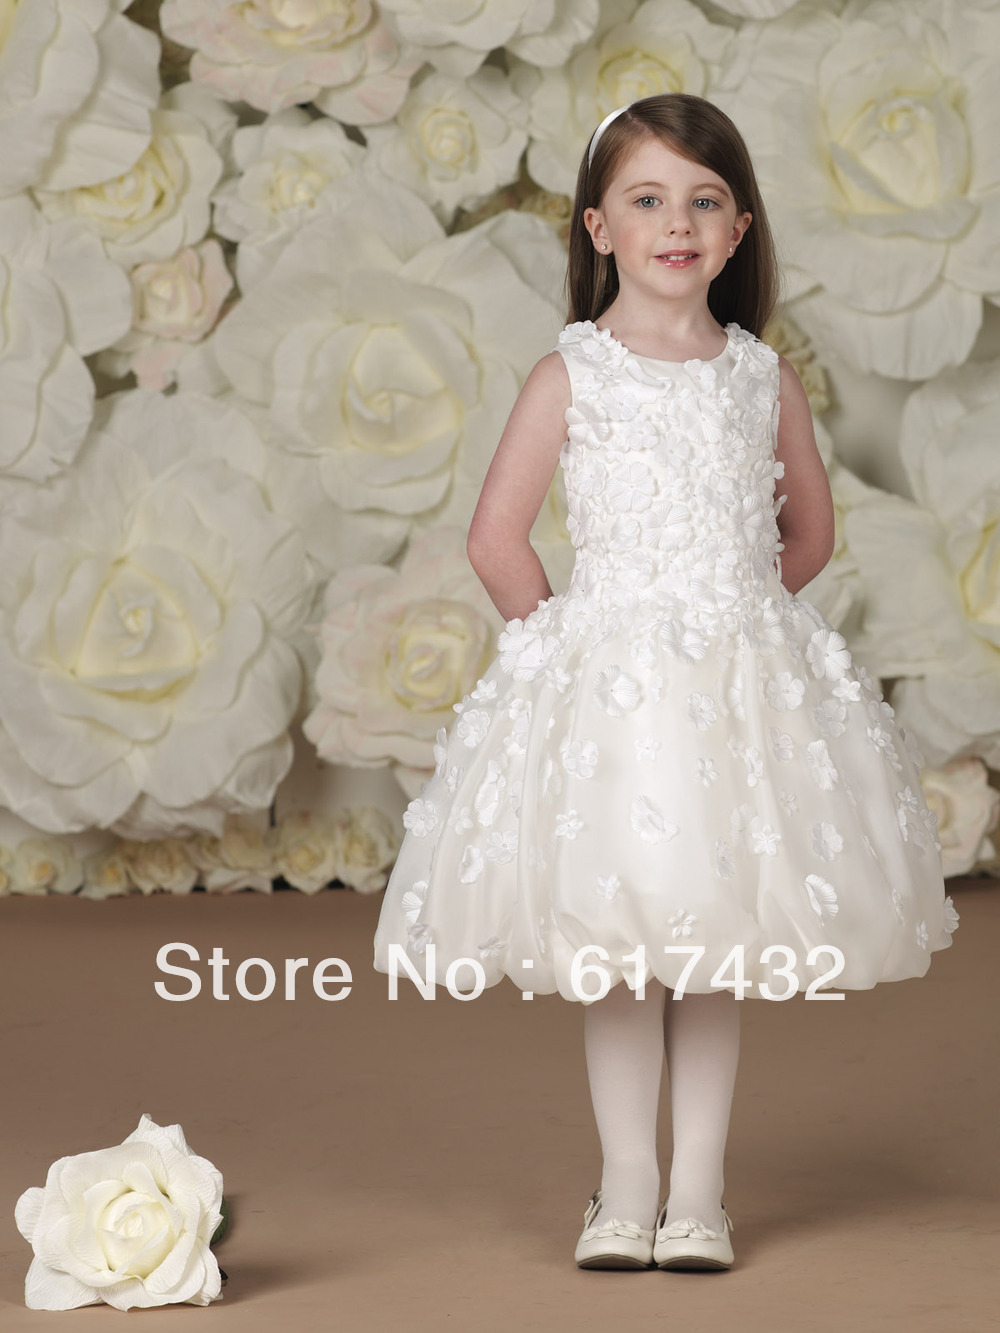 Top Online Ball Gown Sleeveless Knee Length Applique Taffeta Flower Girl Dress Lovely